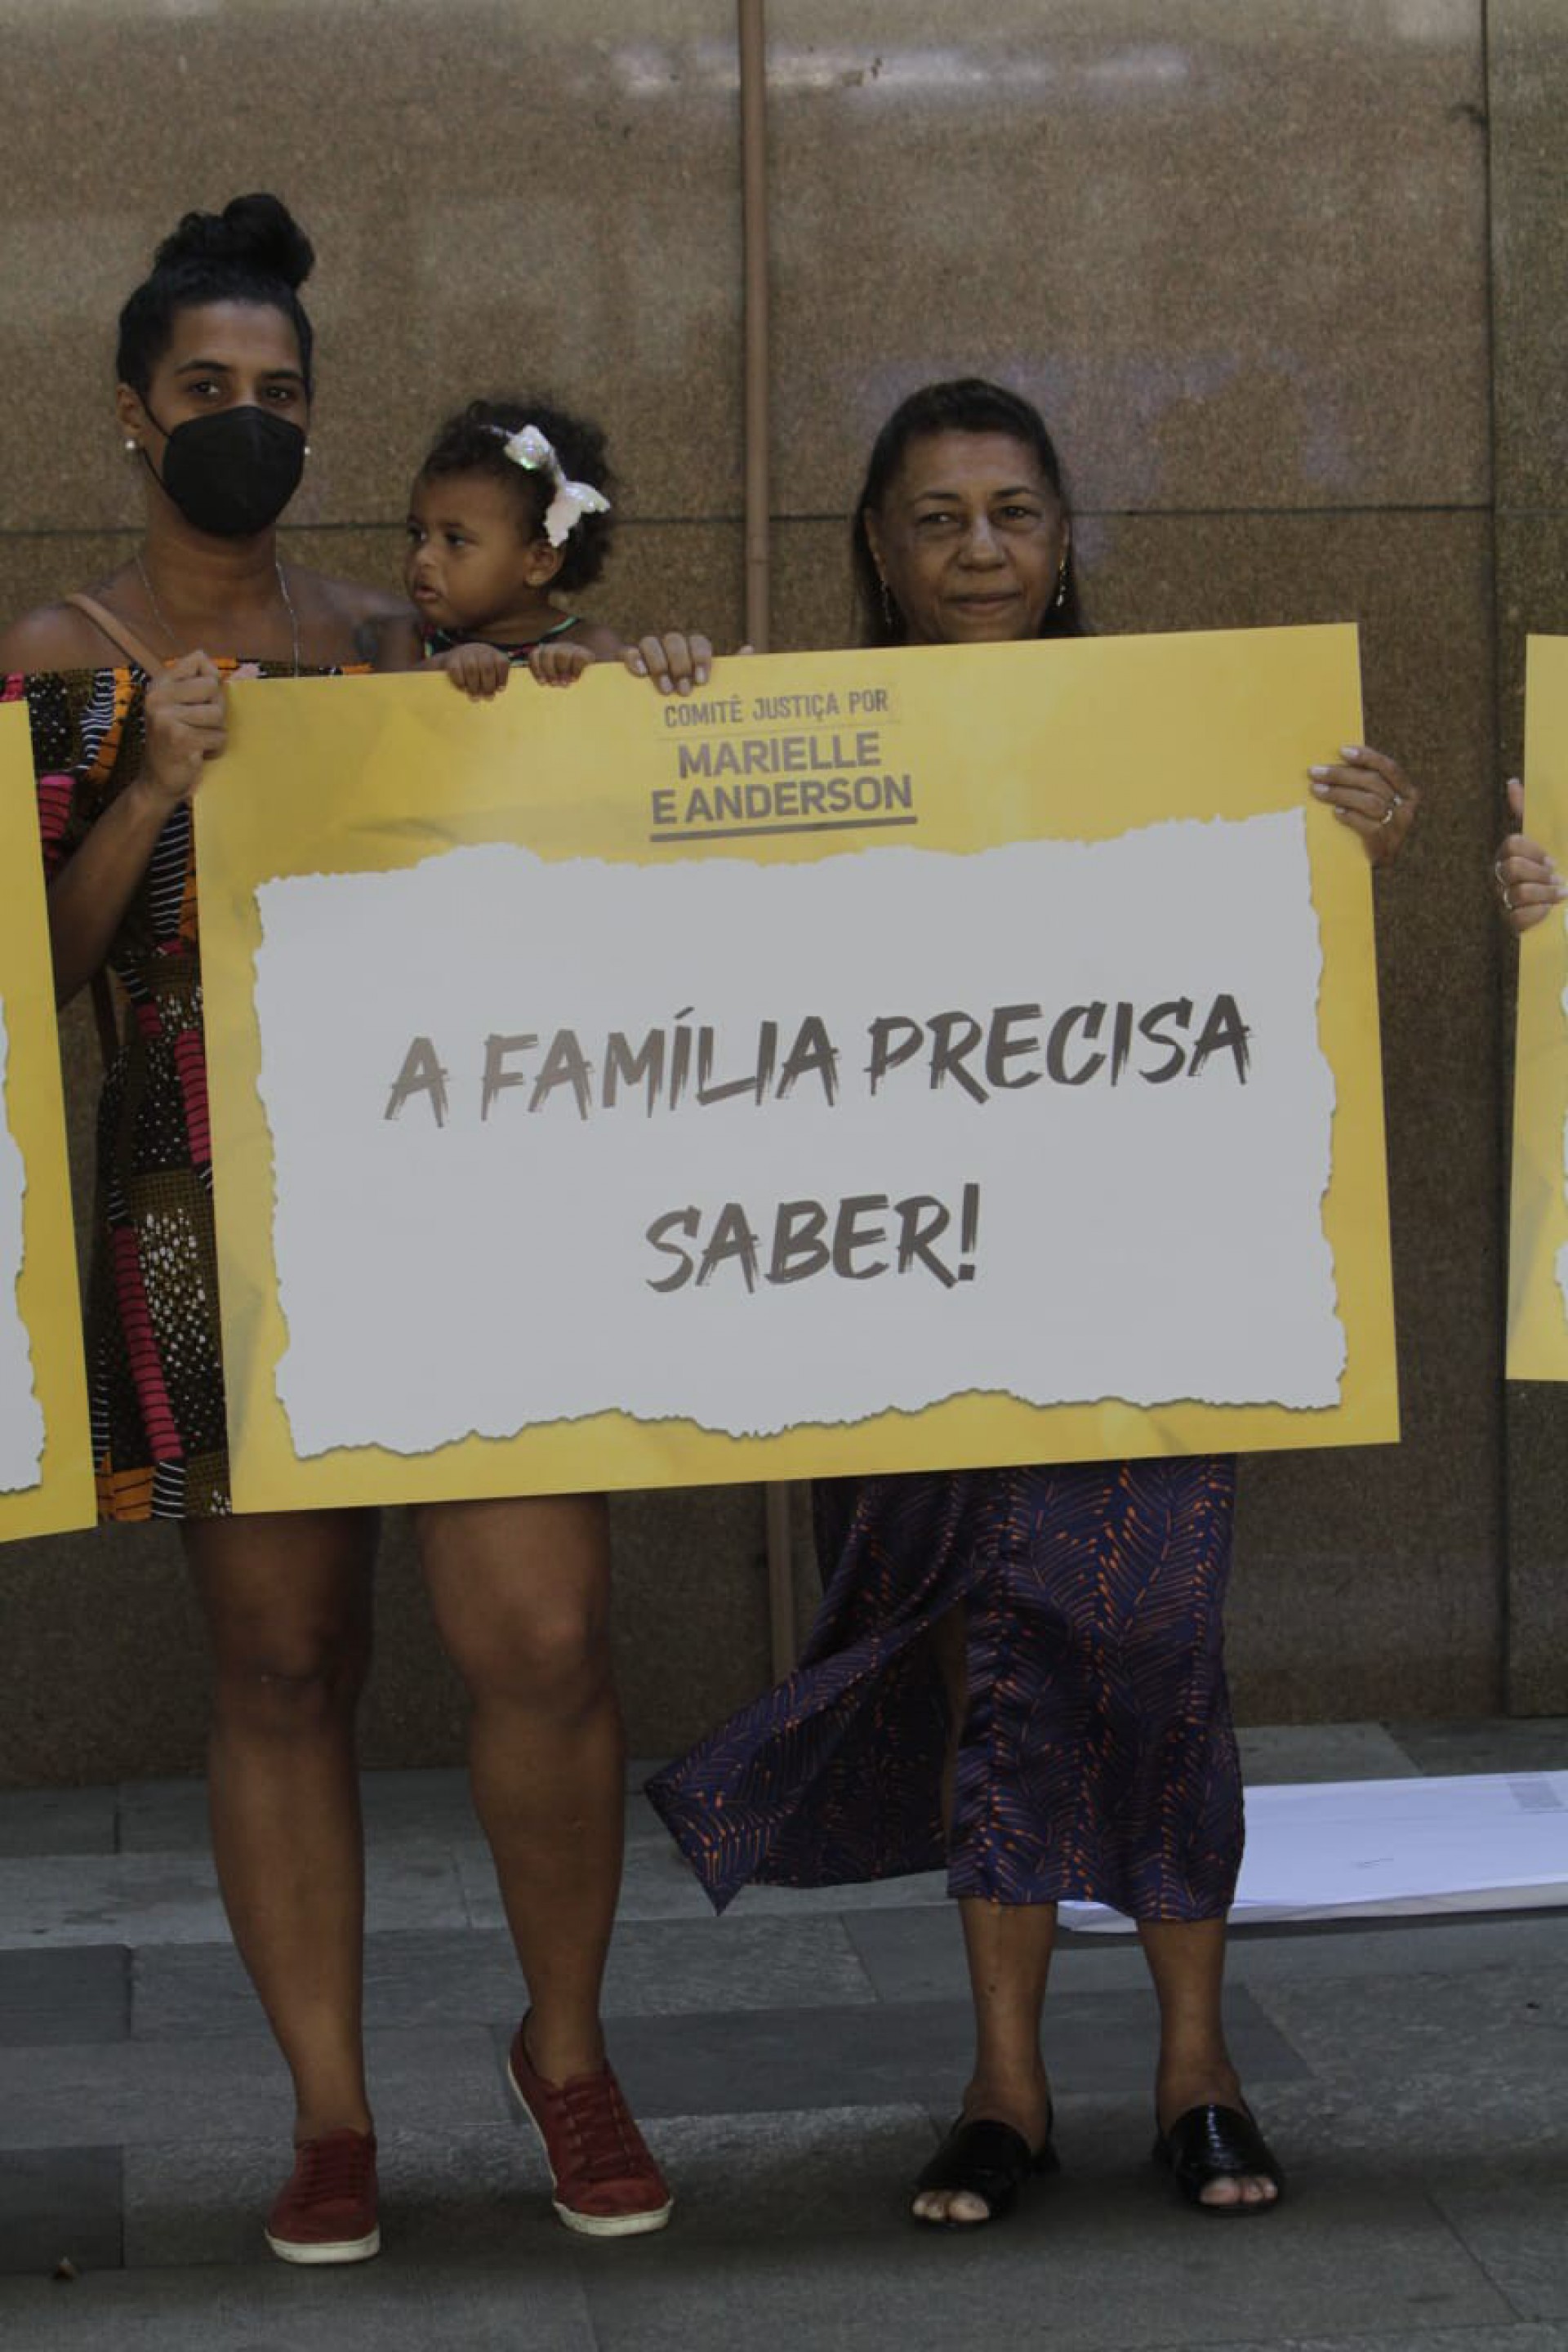 Mãe e familiares de Marielle em ato no TJRJ - Marcos Porto / Agência O Dia